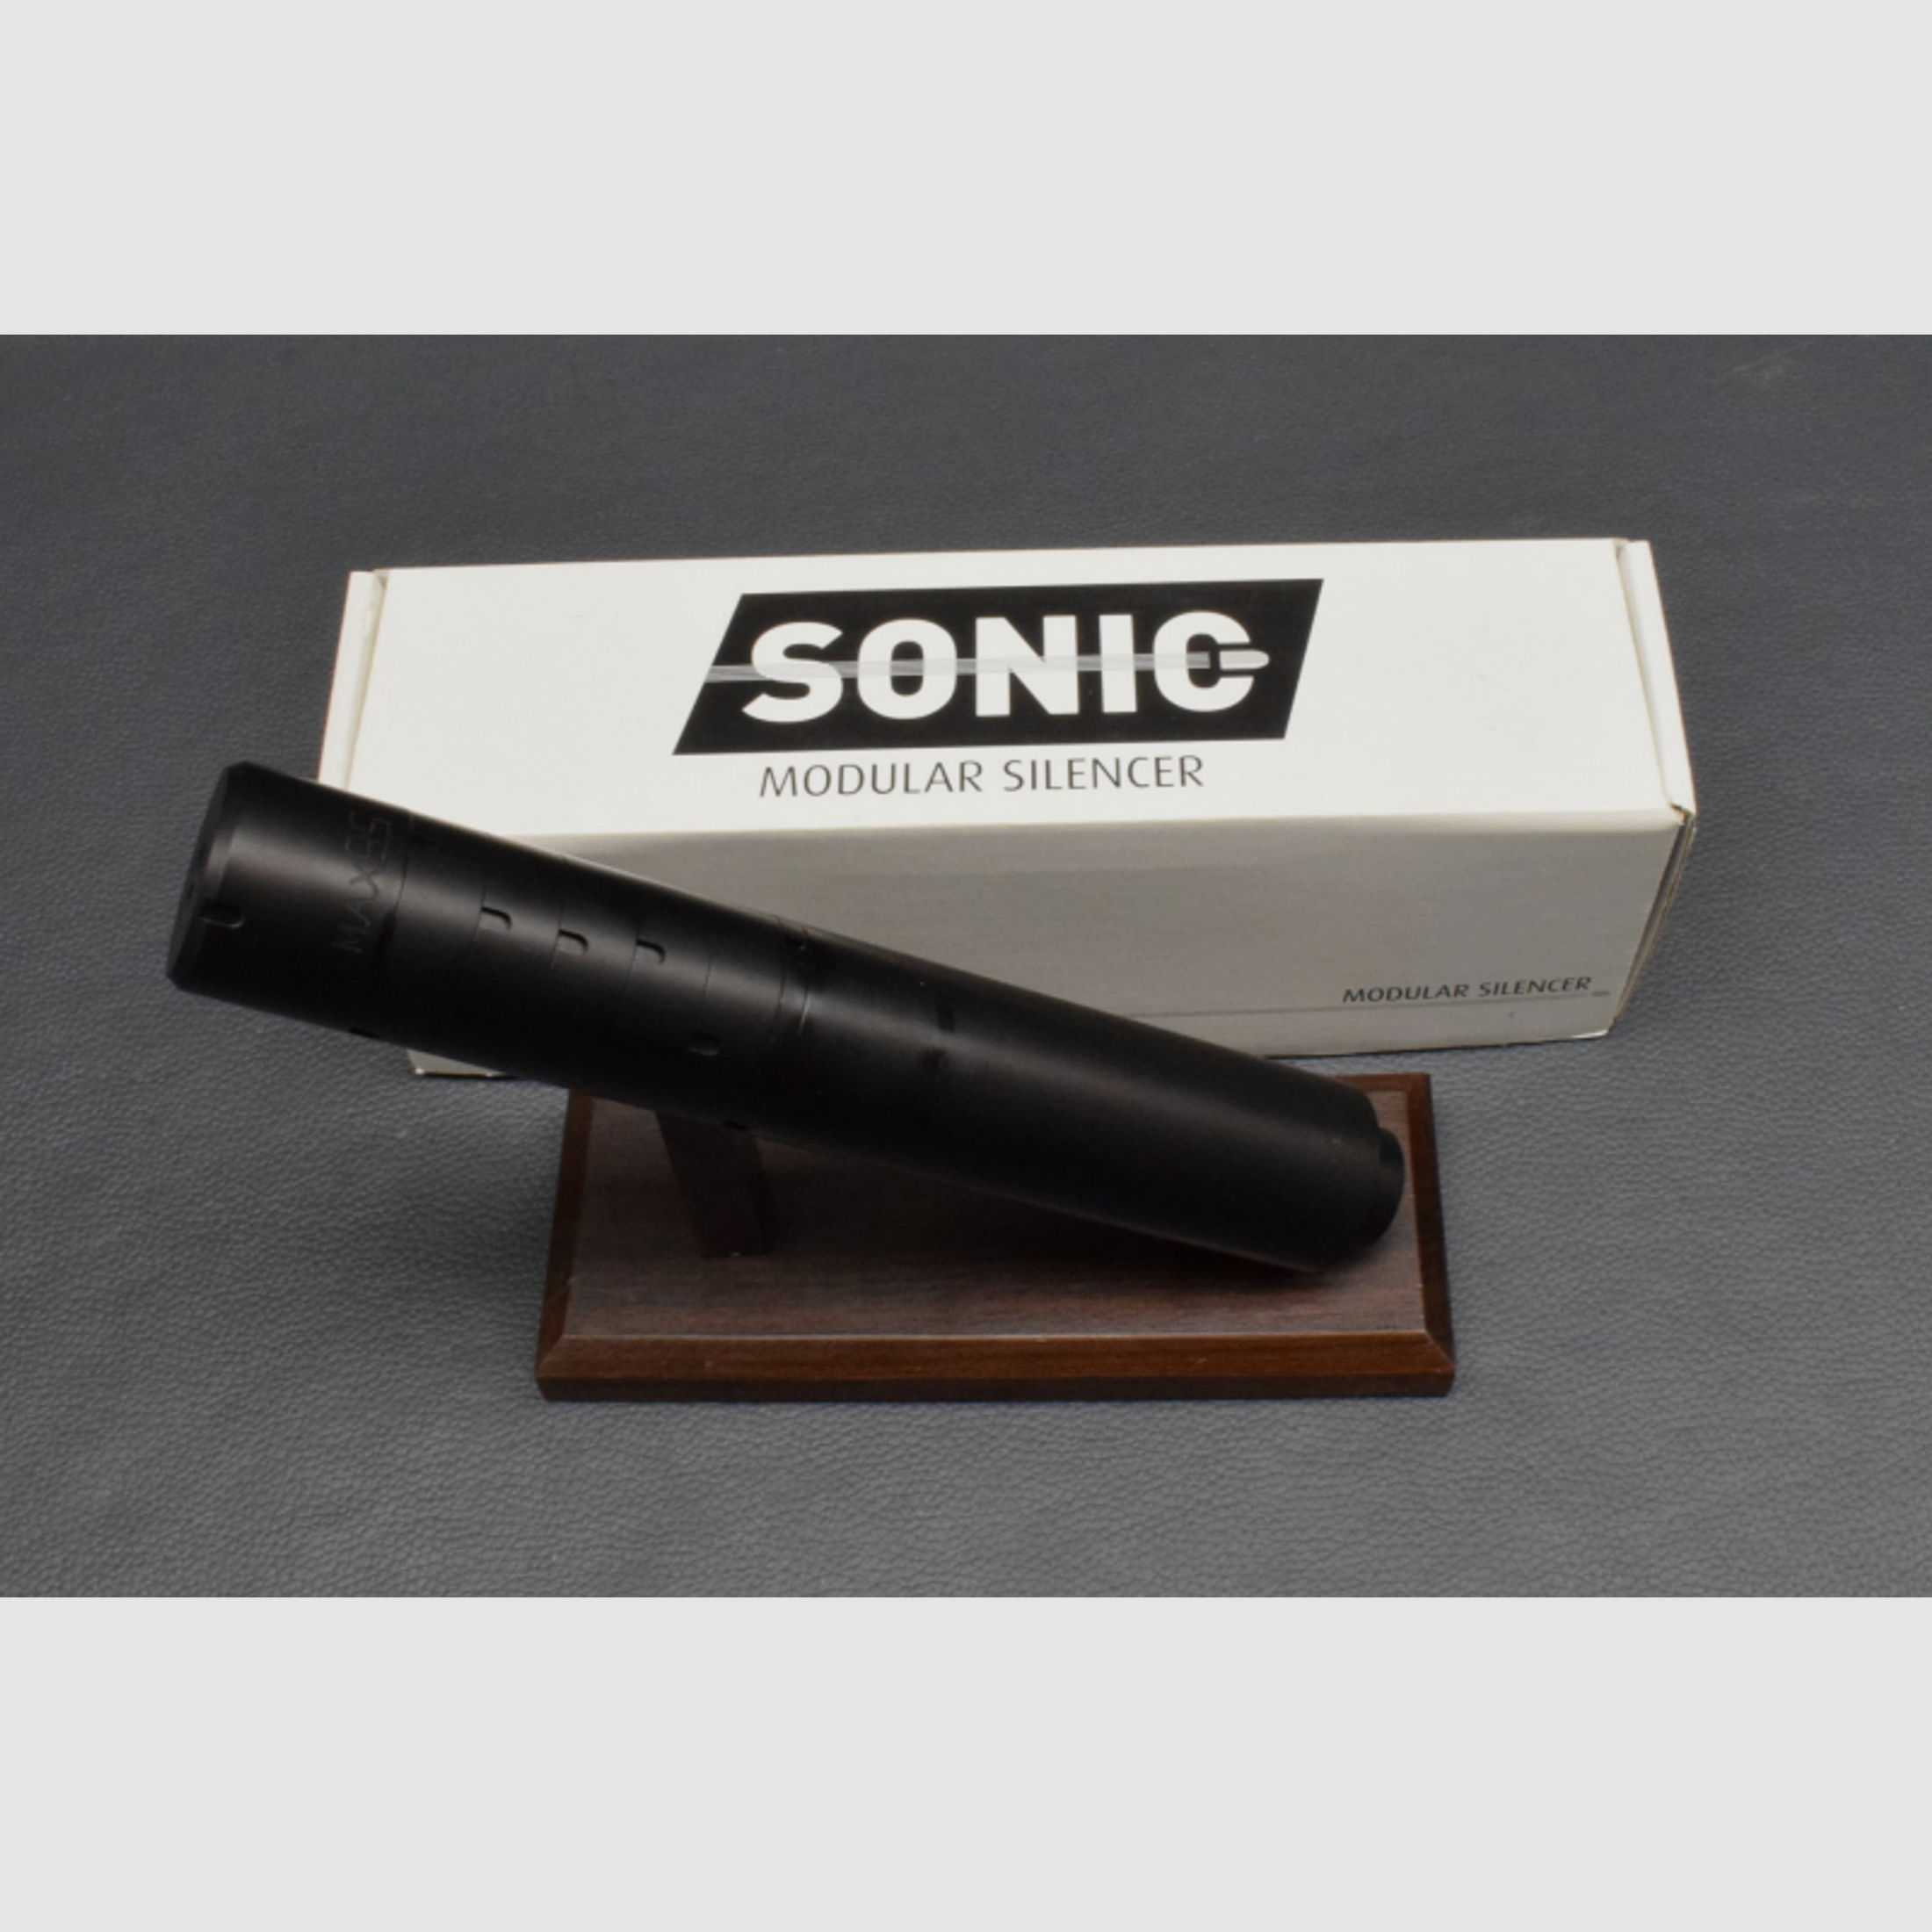 Nielsen Sonic 45 Schalldämpfer, Kal. 9,5mm 5/8x24UNF, Neuware aus Geschäftsauflösung